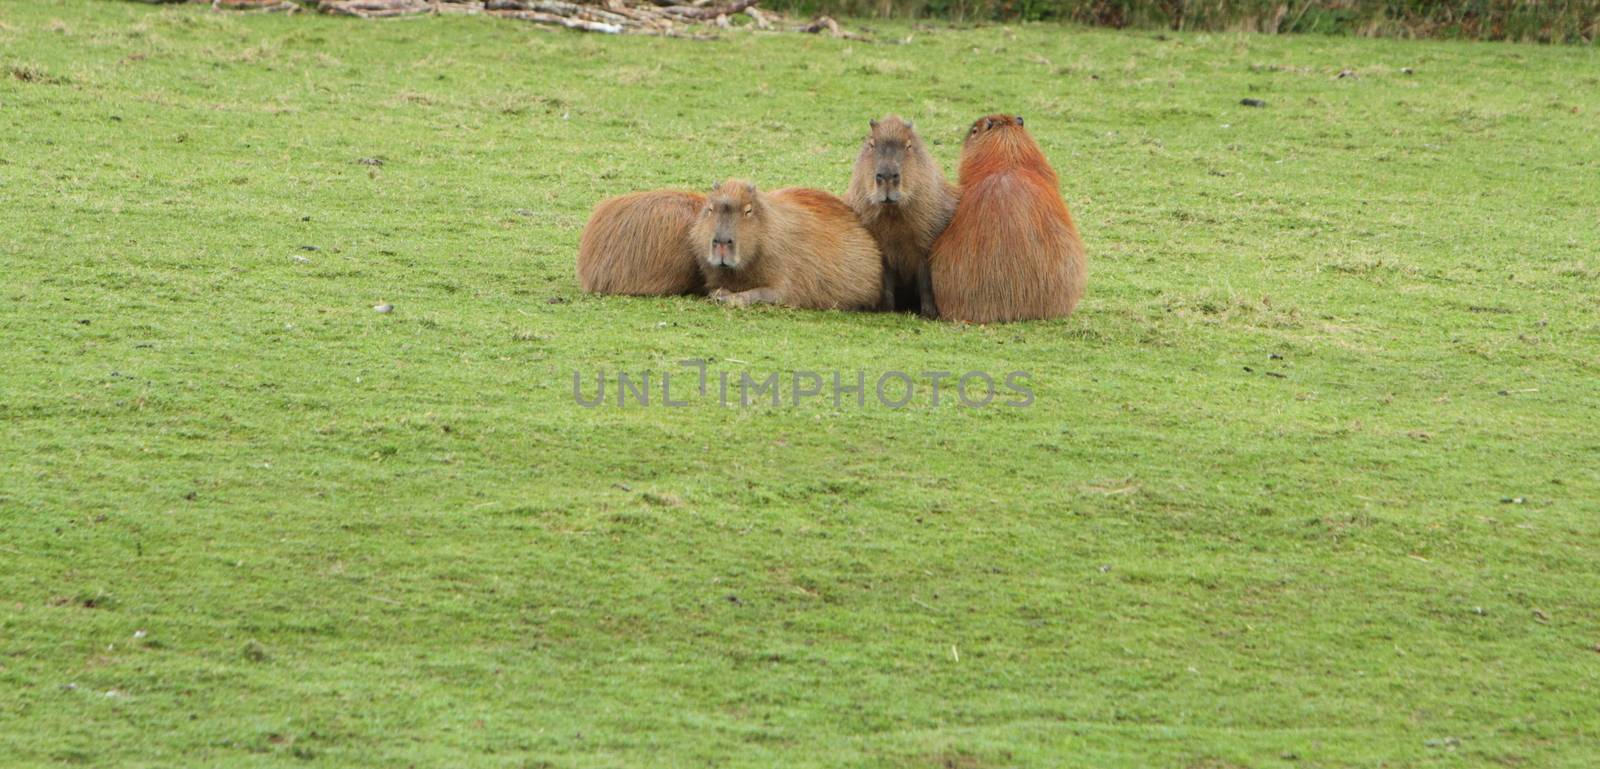 Capybara, hydrochoerus hydrochaeris by mitzy